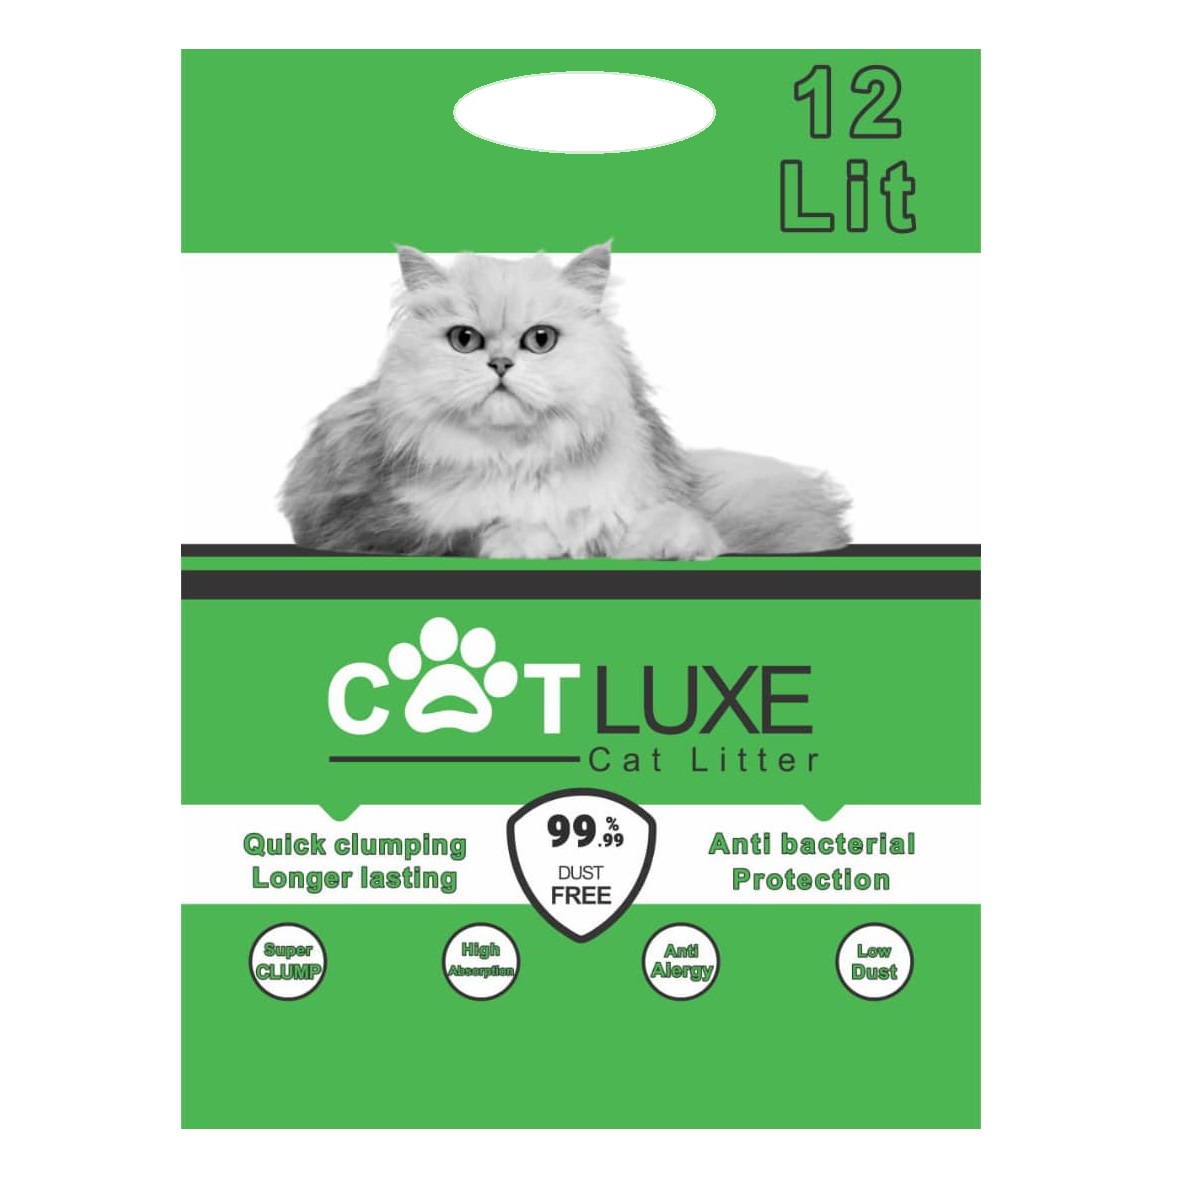 سگ اشپیتز - خاک گربه کت لوکس گرانول وزن 10 کیلوگرم